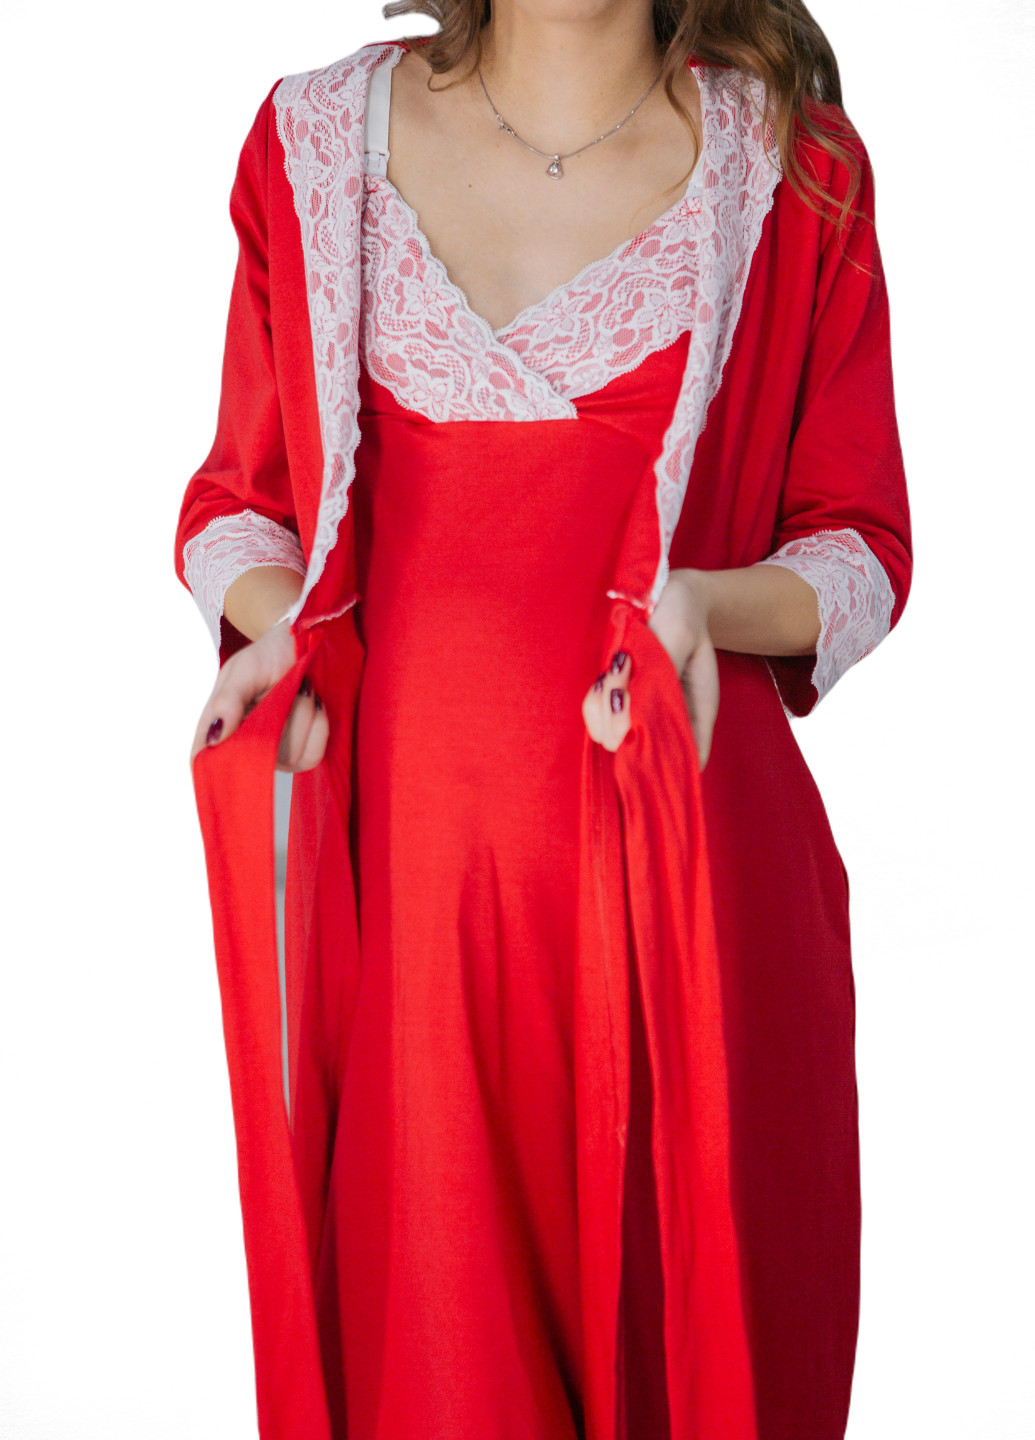 64026502(99)04 Комплект ночная рубашка + халат для беременных и кормящих Красный HN мадлен (223377176)